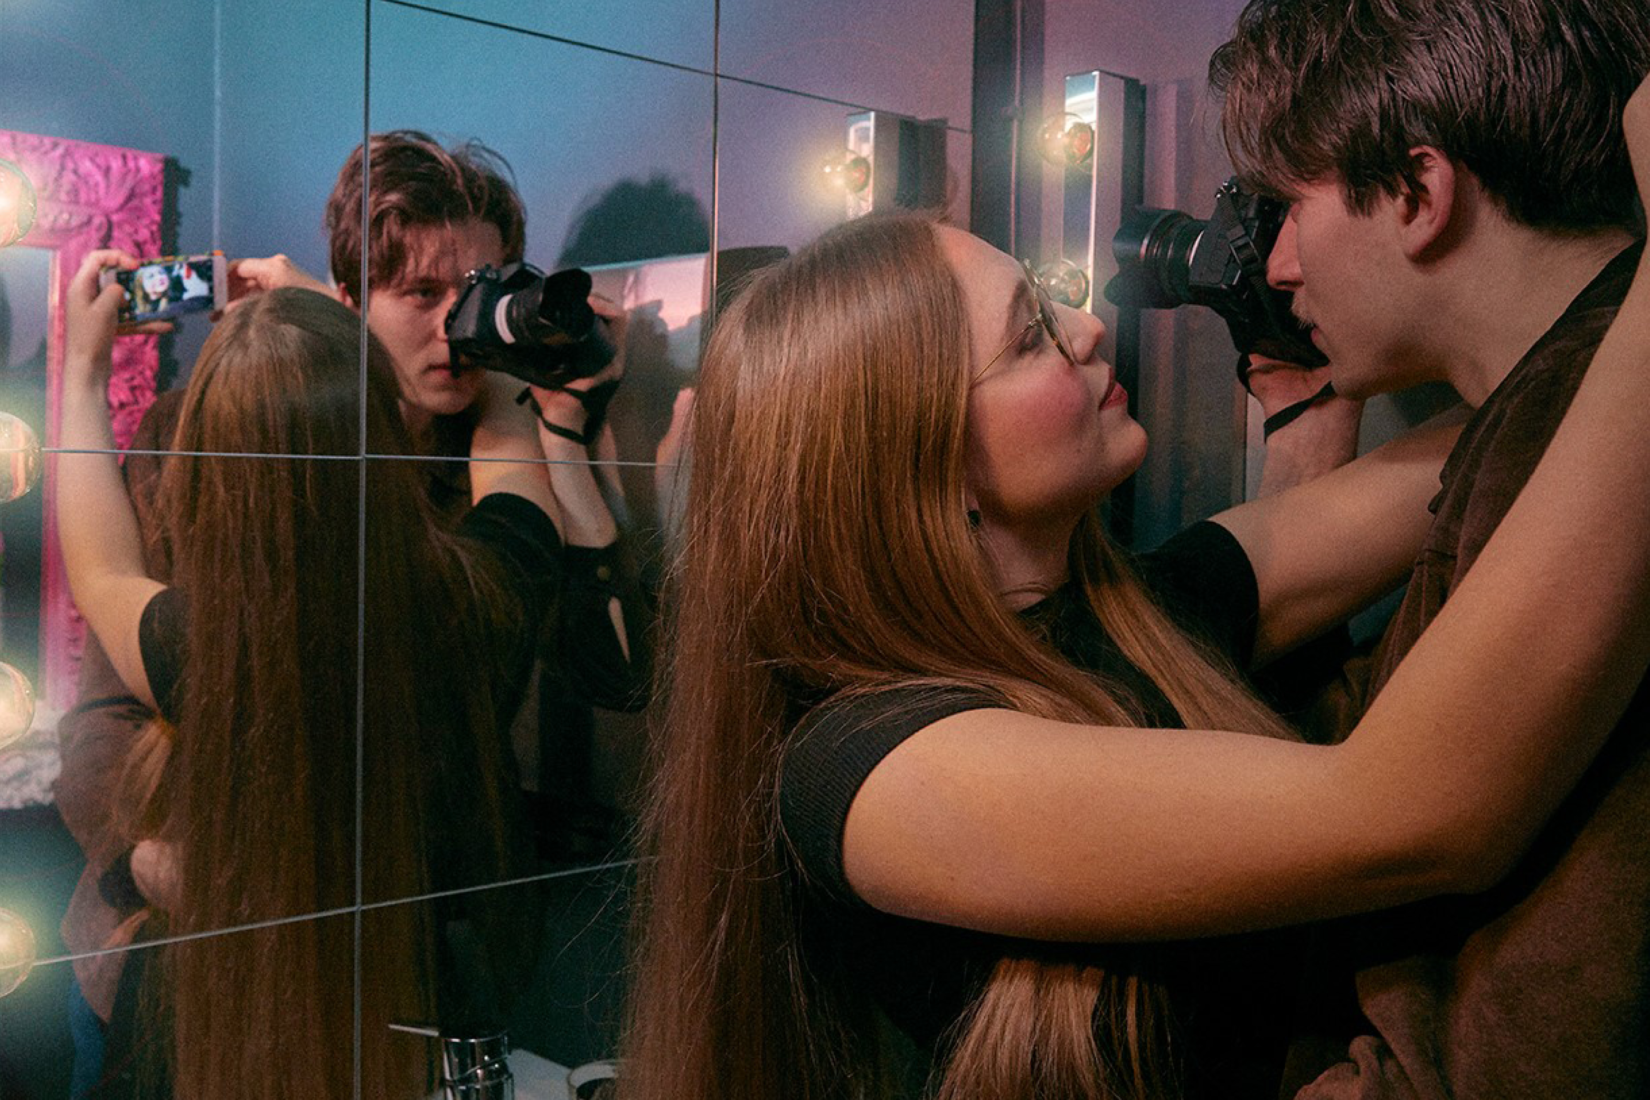 Un homme et une femme sont en train de s'embrasser tout en se prenant en selfie